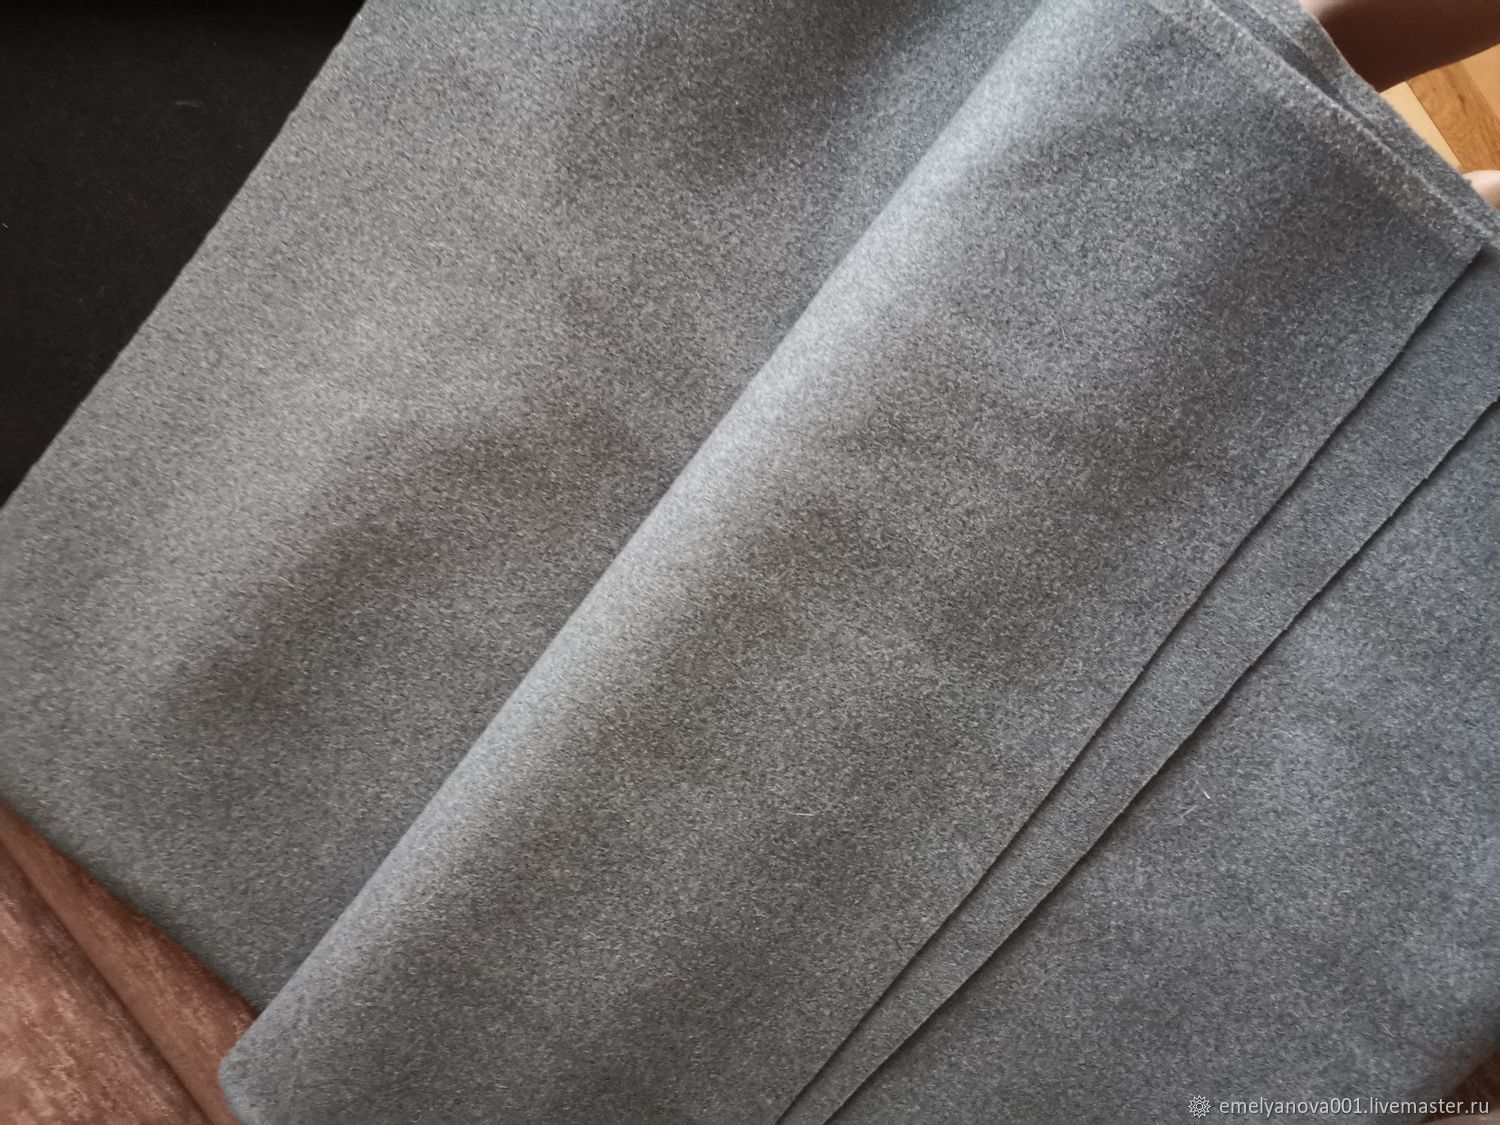 Как правильно погладить пиджак или мужской костюм: пошаговая инструкция